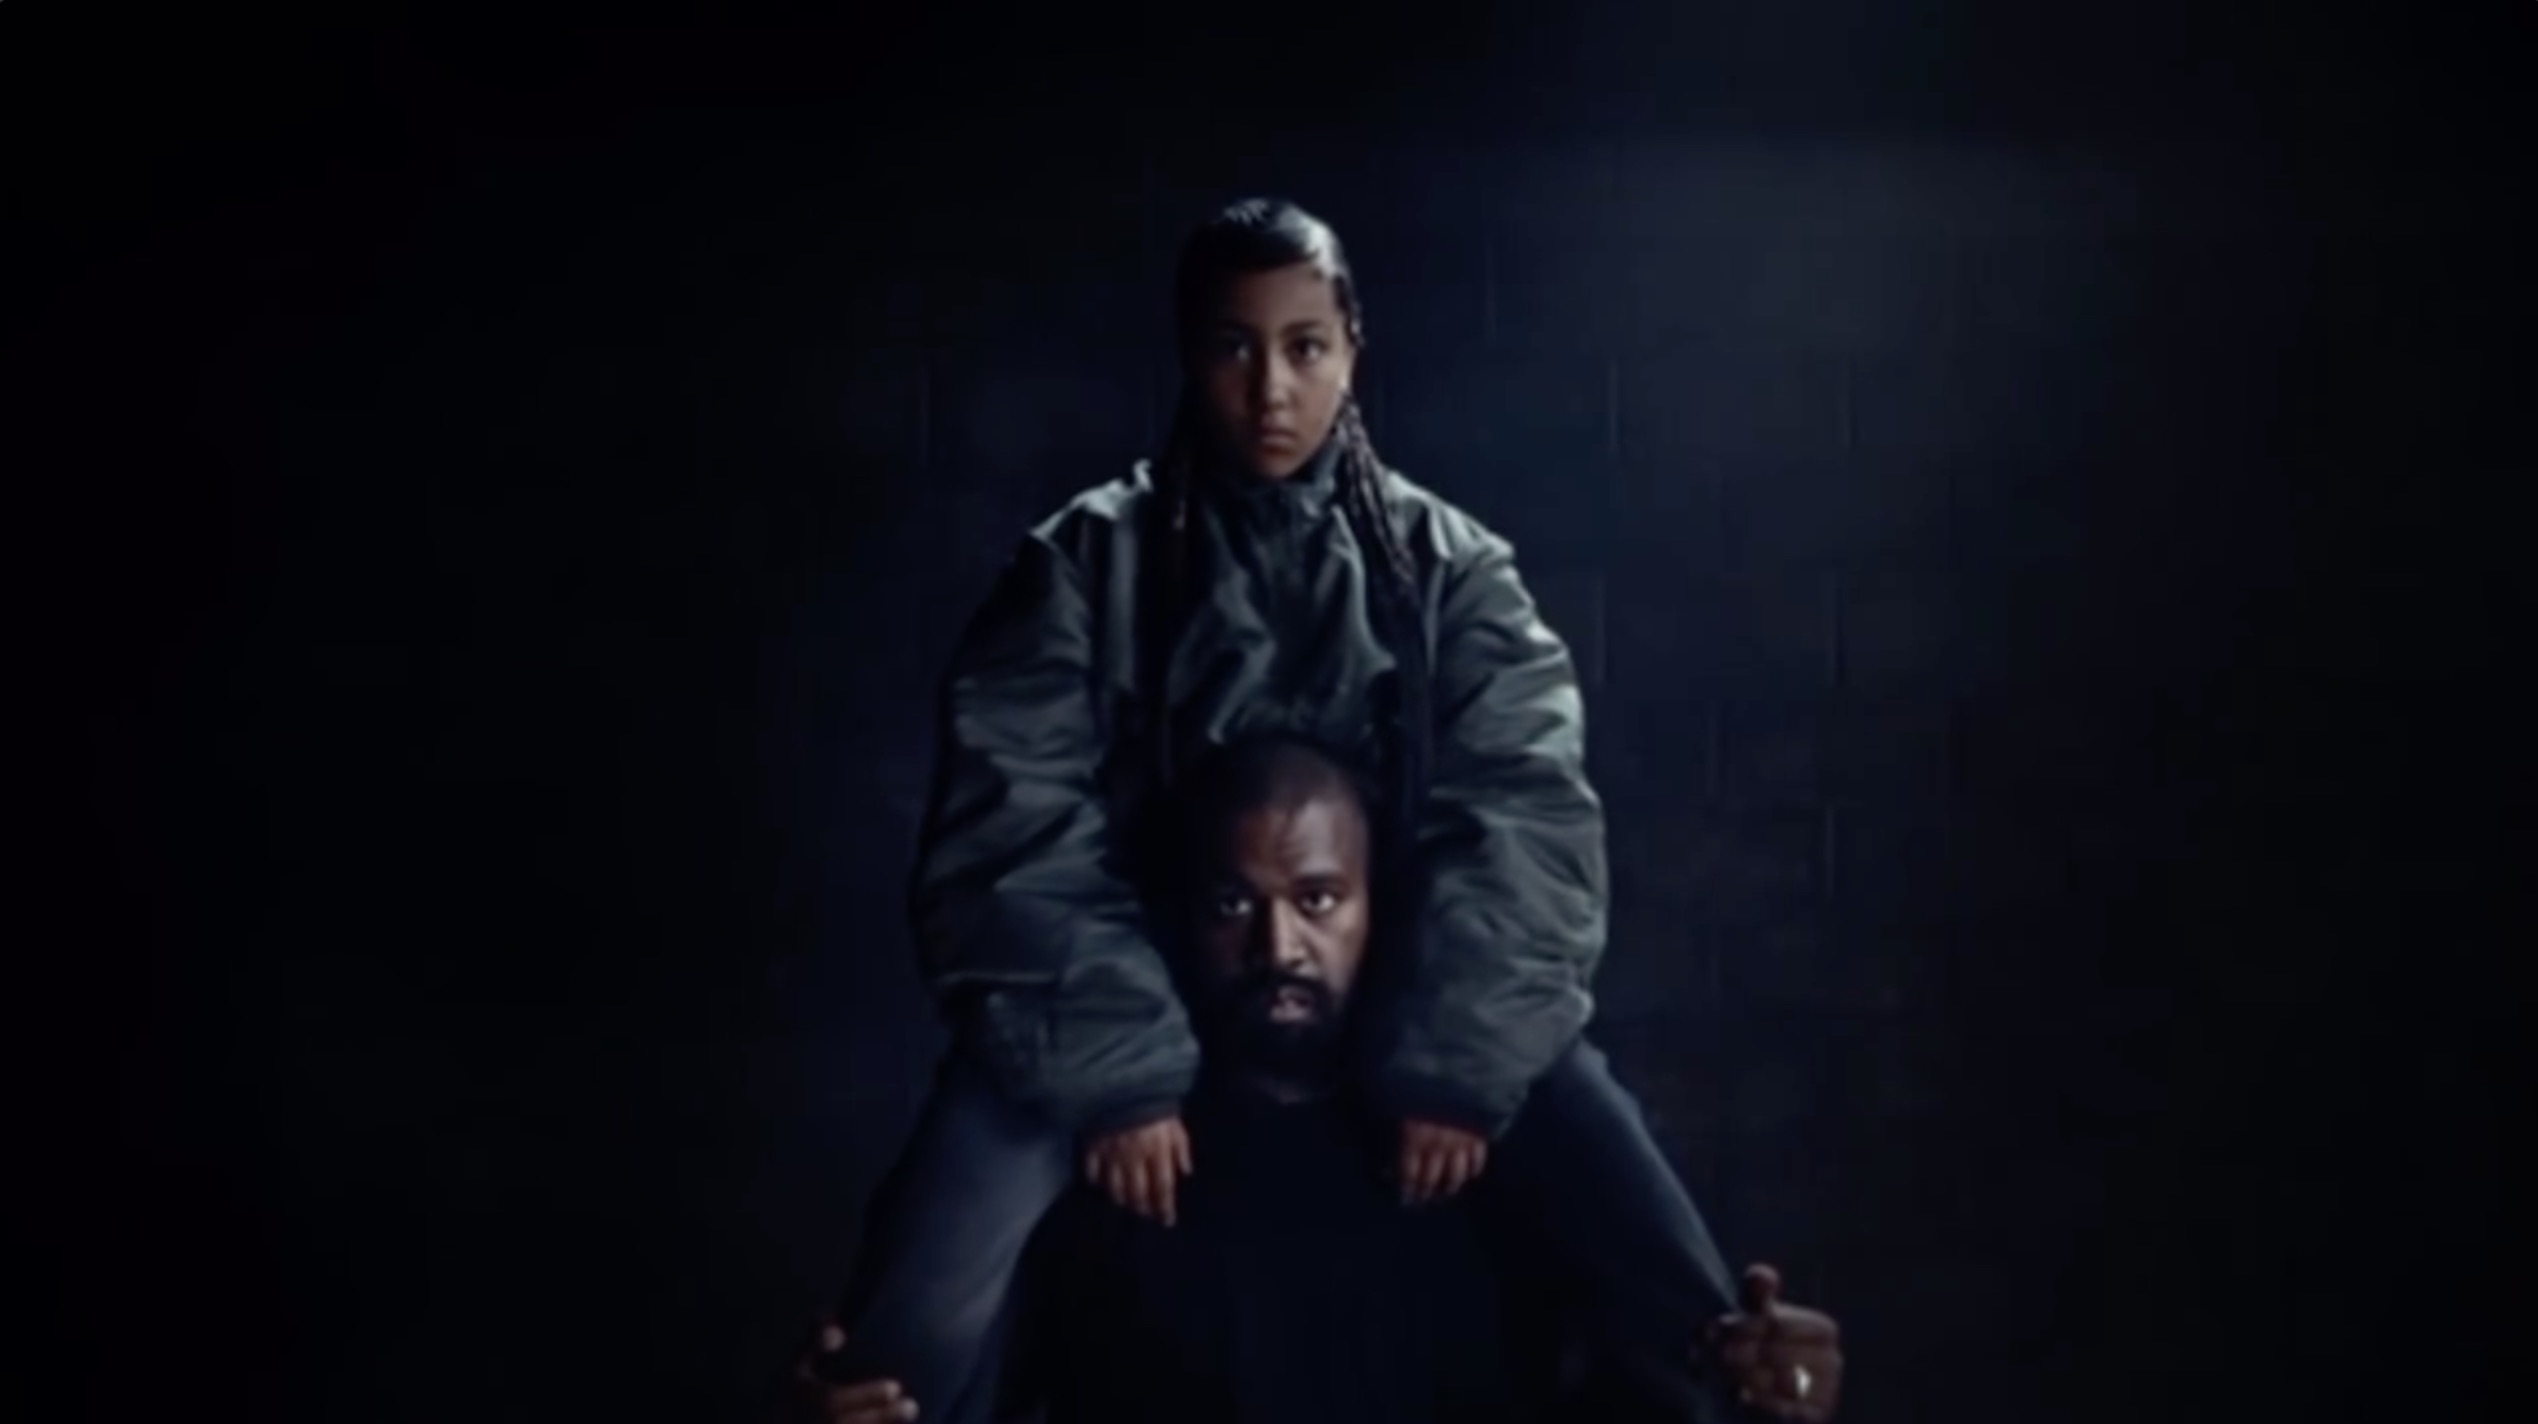 North trat an der Seite ihres Vaters in dessen neuestem Musikvideo auf und erhielt sogar einen Feature-Credit für ihre kurze Rap-Strophe in dem Lied